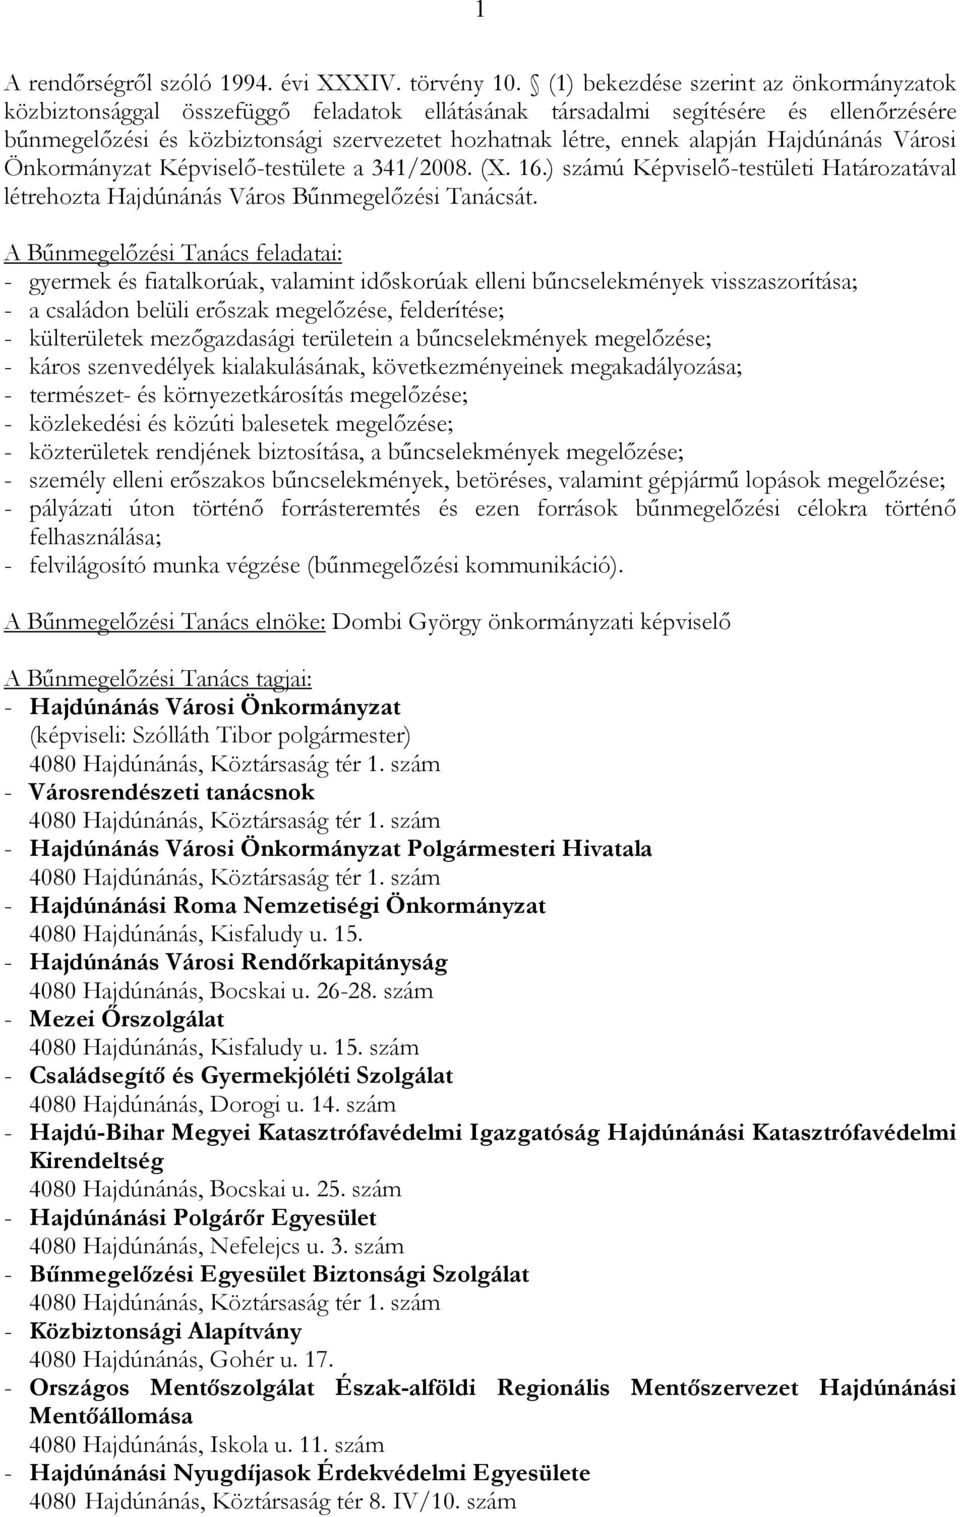 alapján Hajdúnánás Városi Önkormányzat Képviselı-testülete a 341/2008. (X. 16.) számú Képviselı-testületi Határozatával létrehozta Hajdúnánás Város Bőnmegelızési Tanácsát.